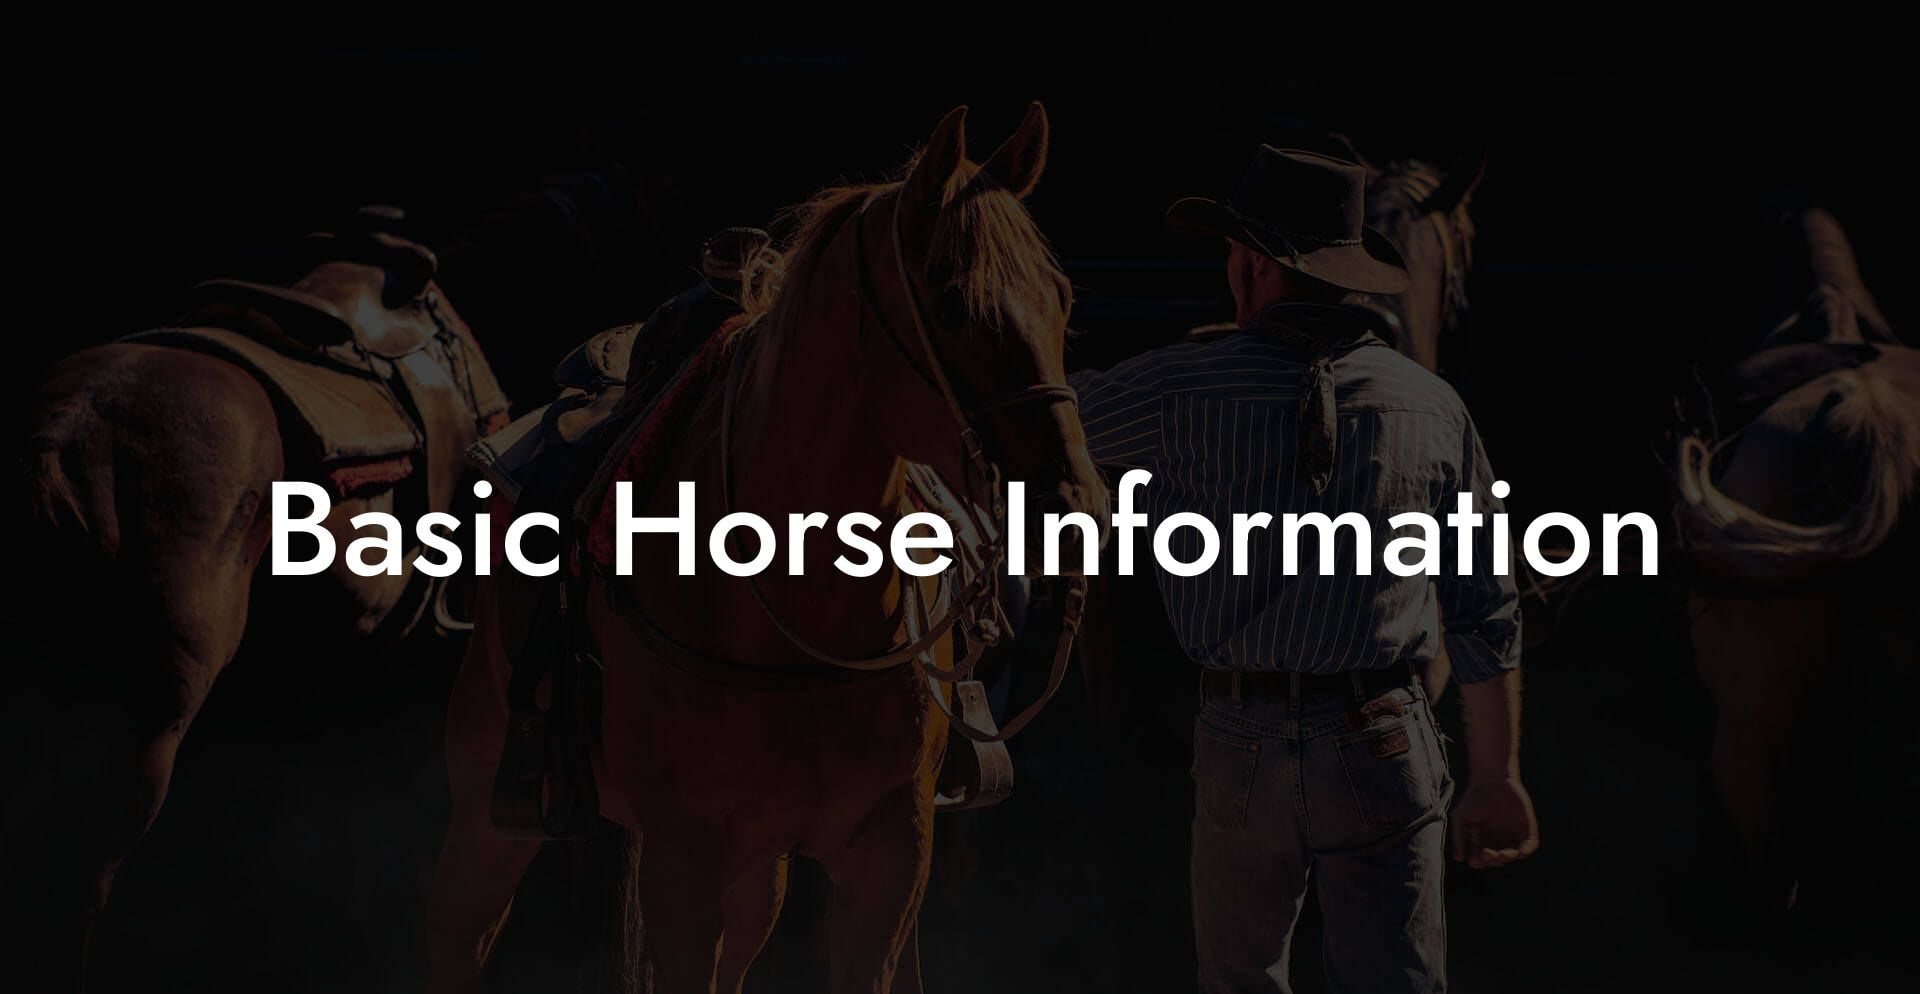 Basic Horse Information